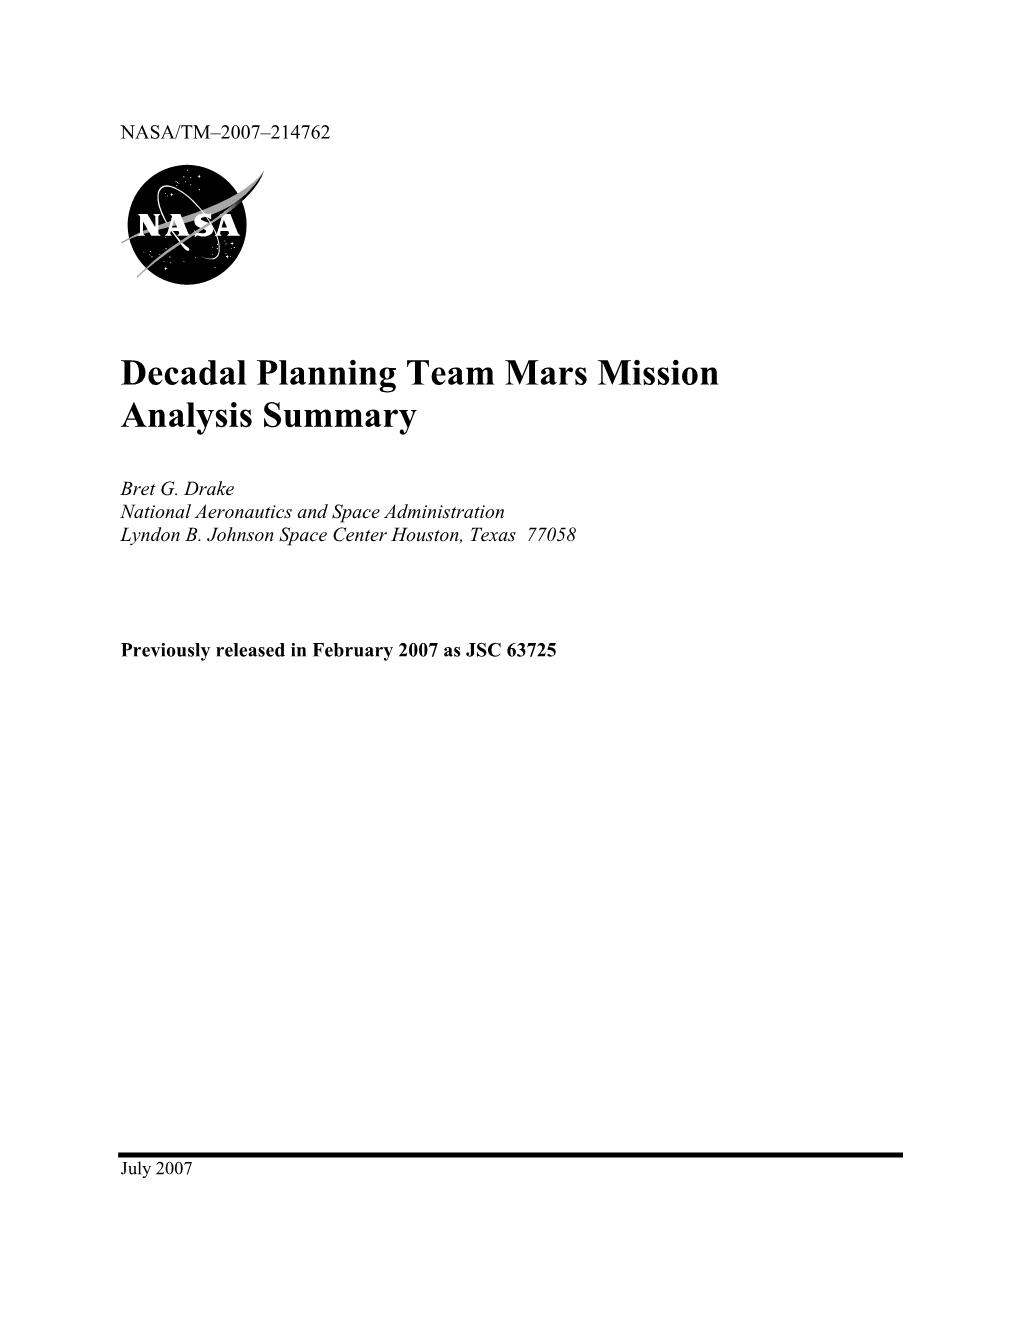 Decadal Planning Team Mars Mission Analysis Summary